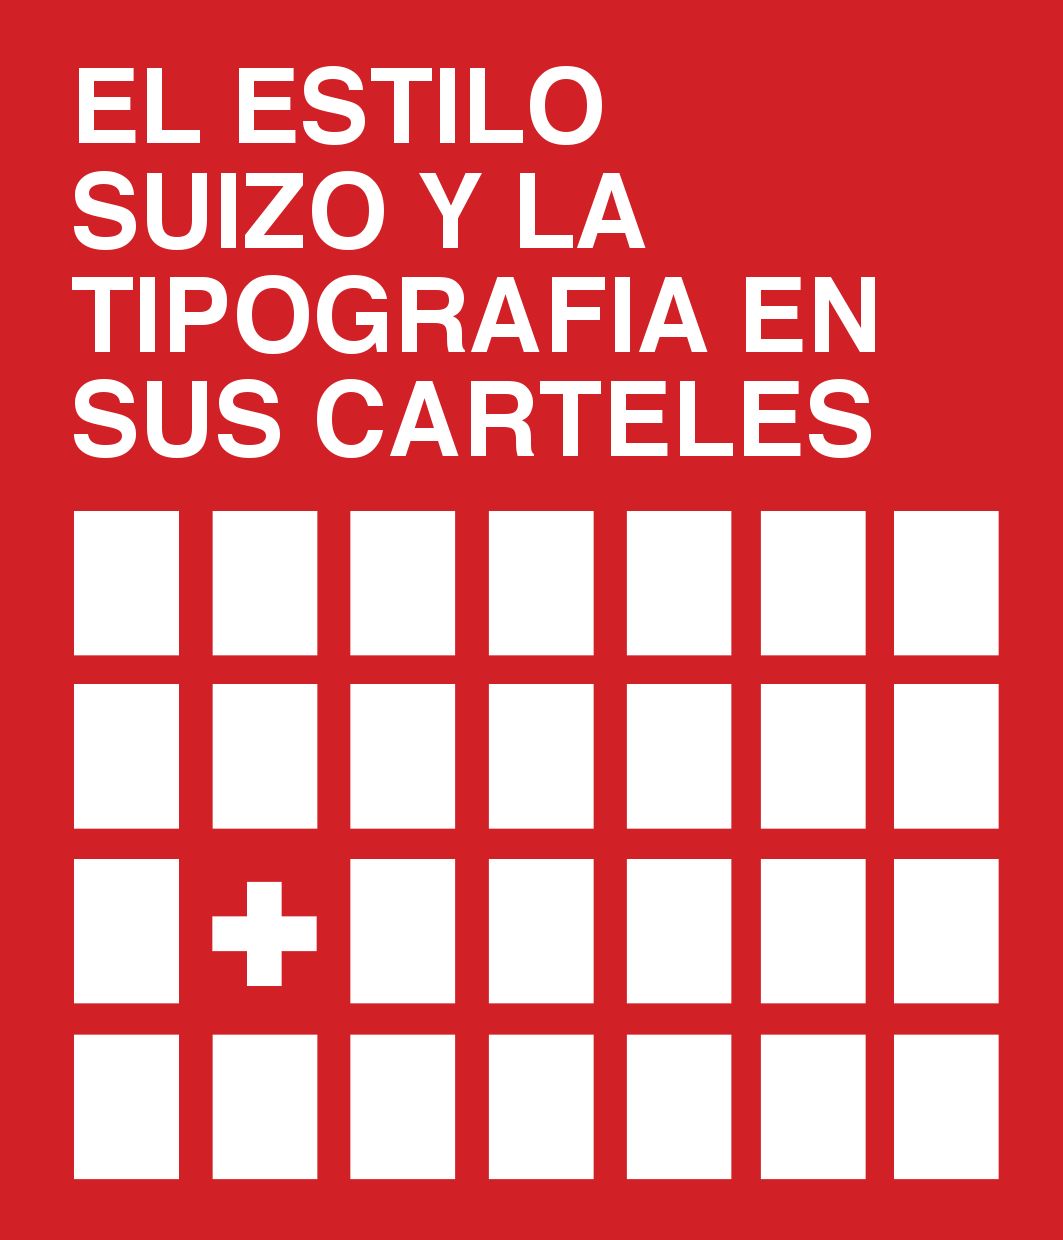 Libro de tipografía gratis - el estilo suizo y la tipografía en sus carteles